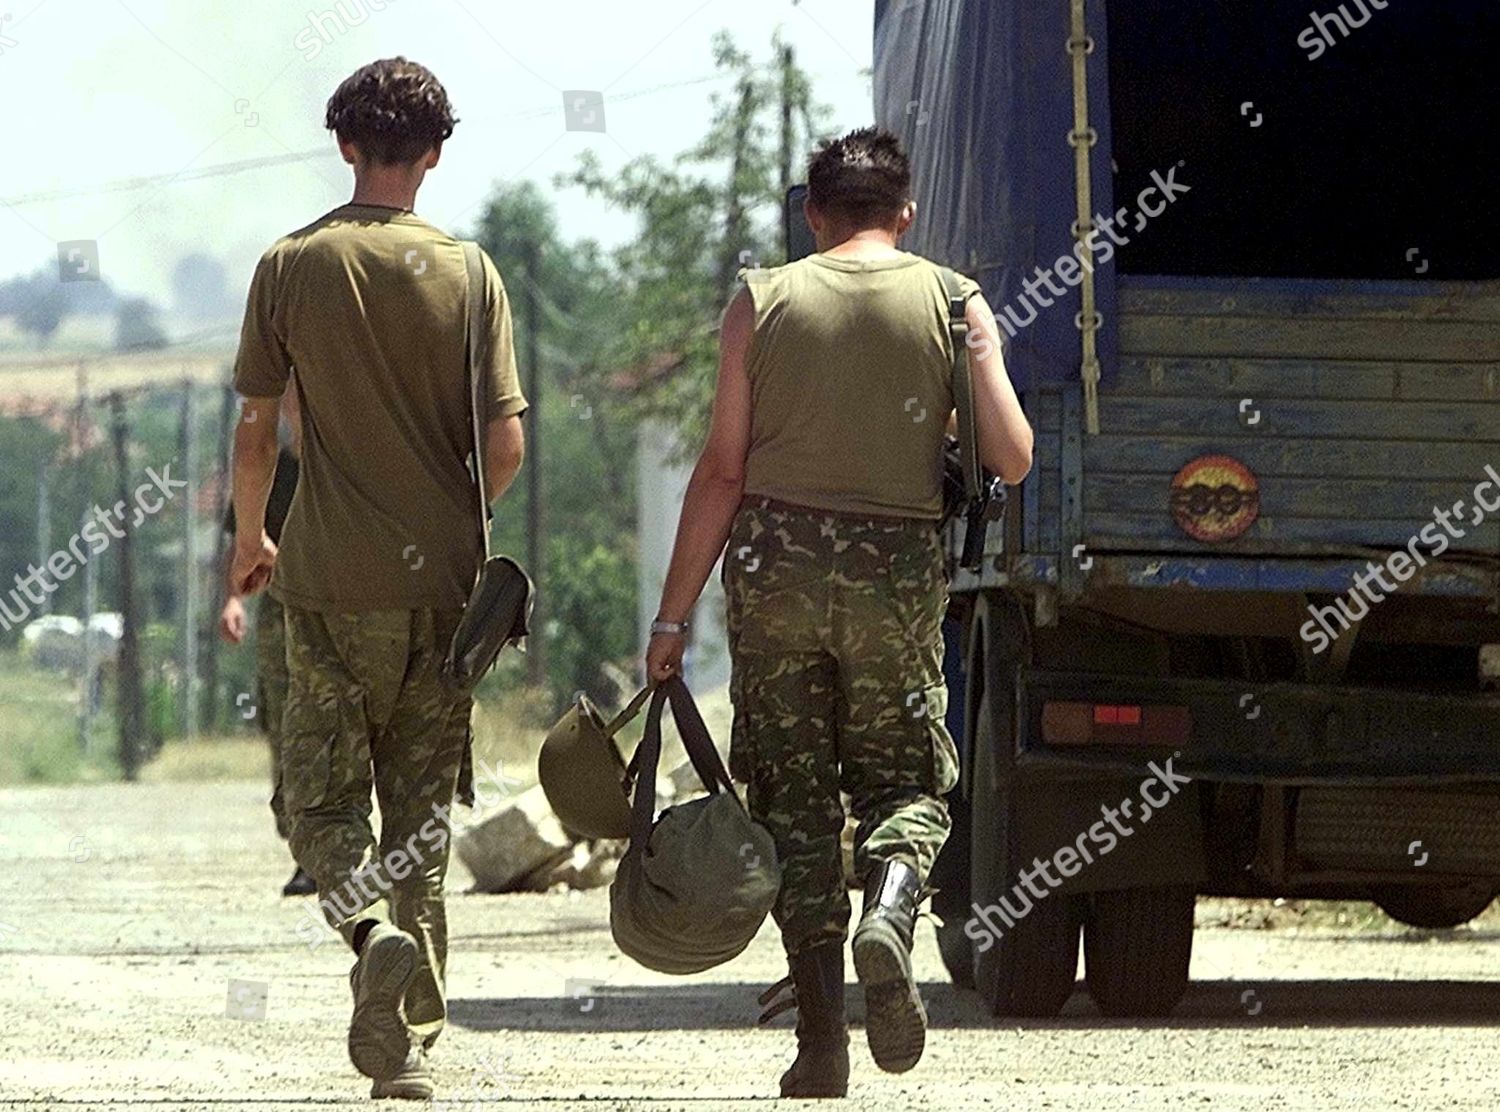 macedonia-reservist-jul-2001-shutterstock-editorial-8482529a.jpg